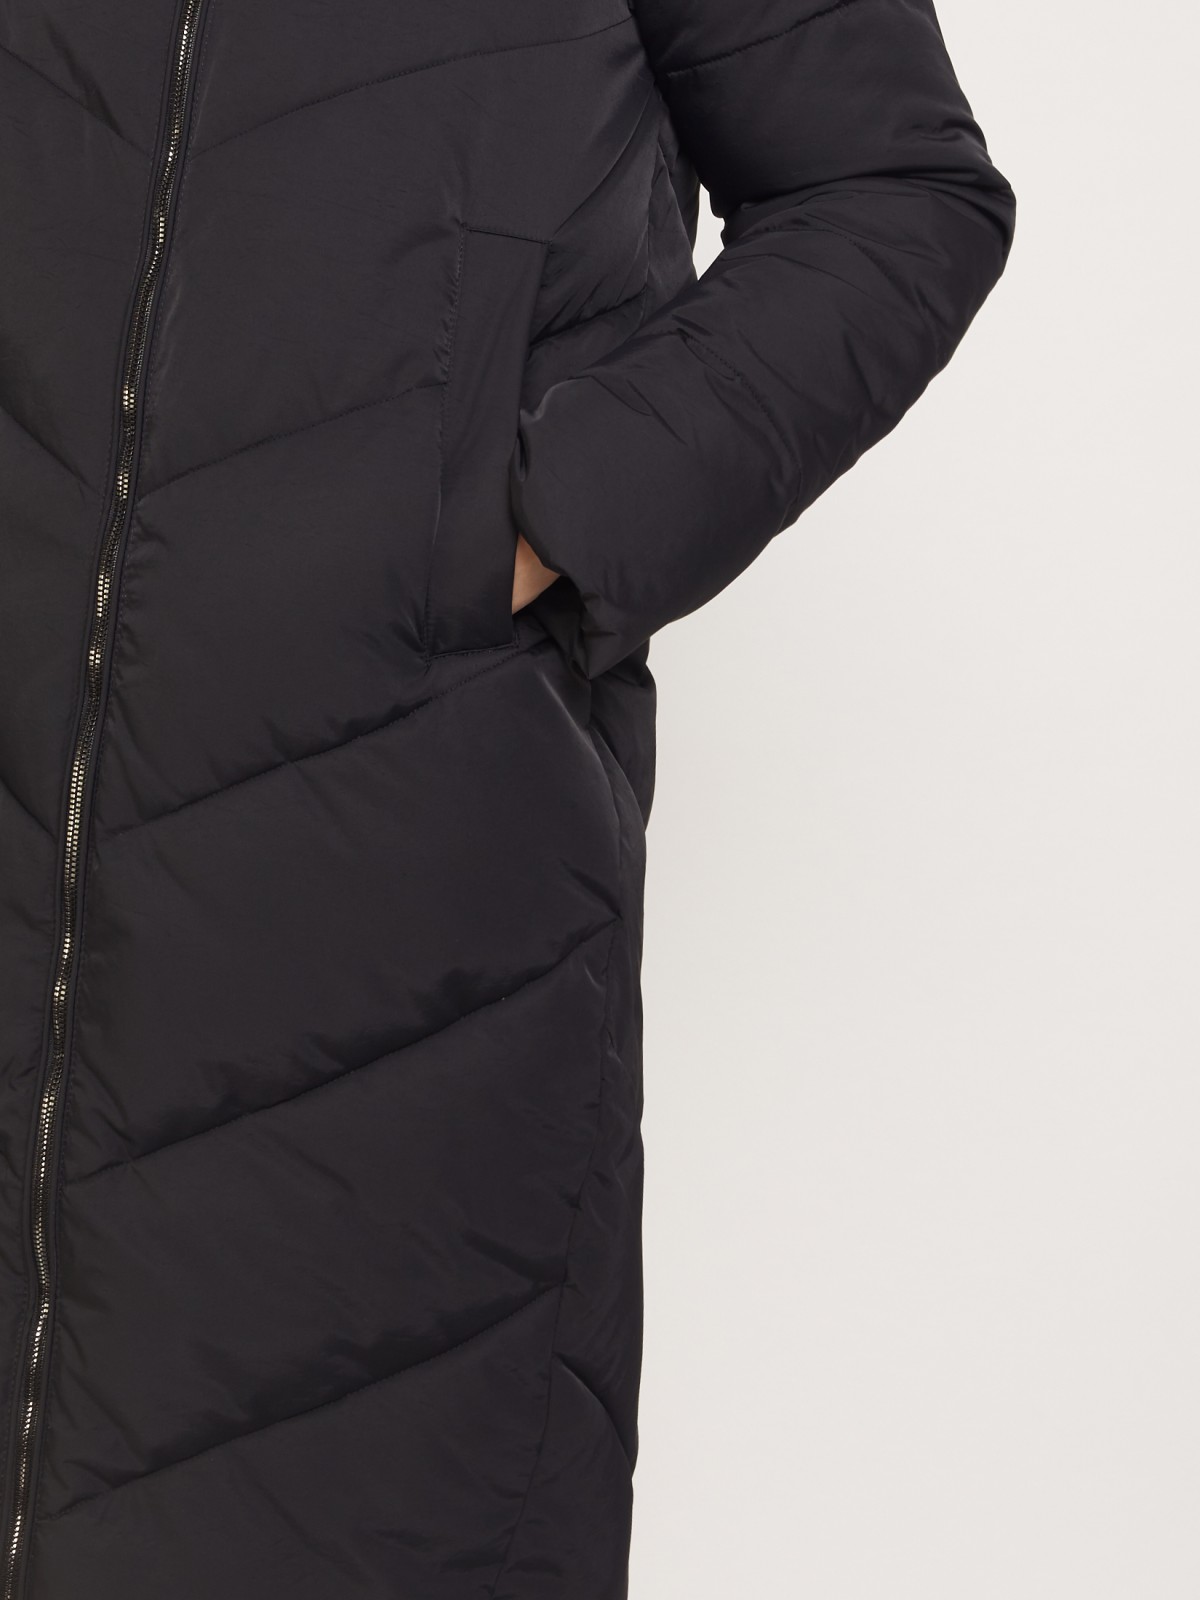 Тёплое стёганое пальто с капюшоном zolla 021345202054, цвет черный, размер XS - фото 4